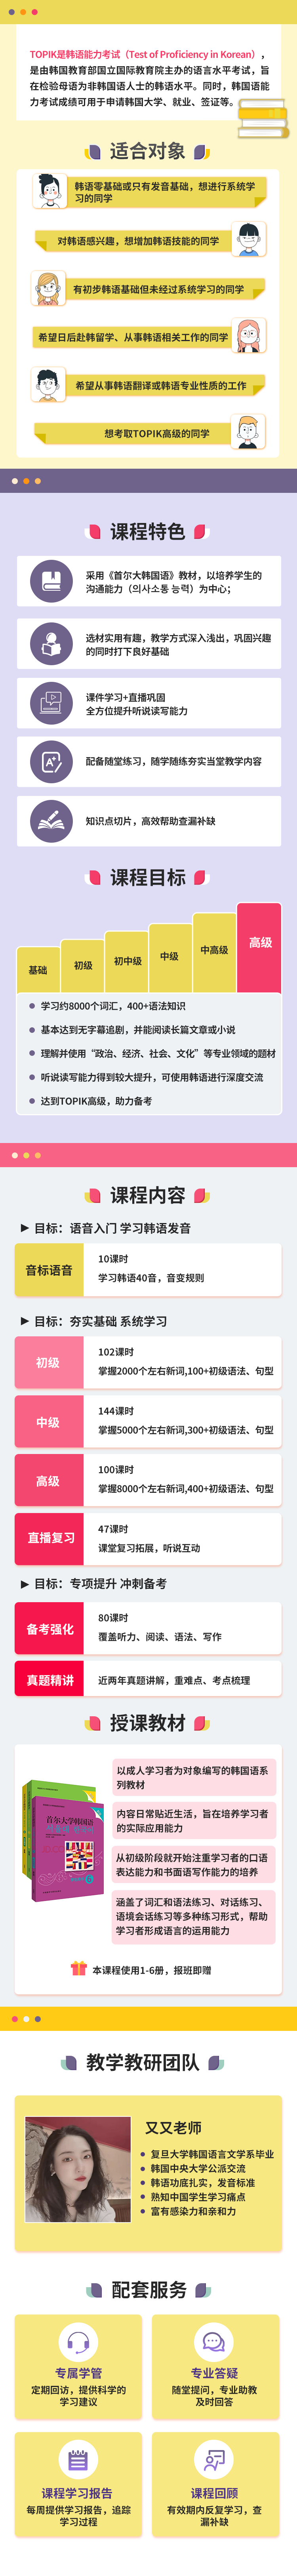 https://simg01.gaodunwangxiao.com/uploadfiles/product-center/202211/15/0e3fe_20221115163821.png